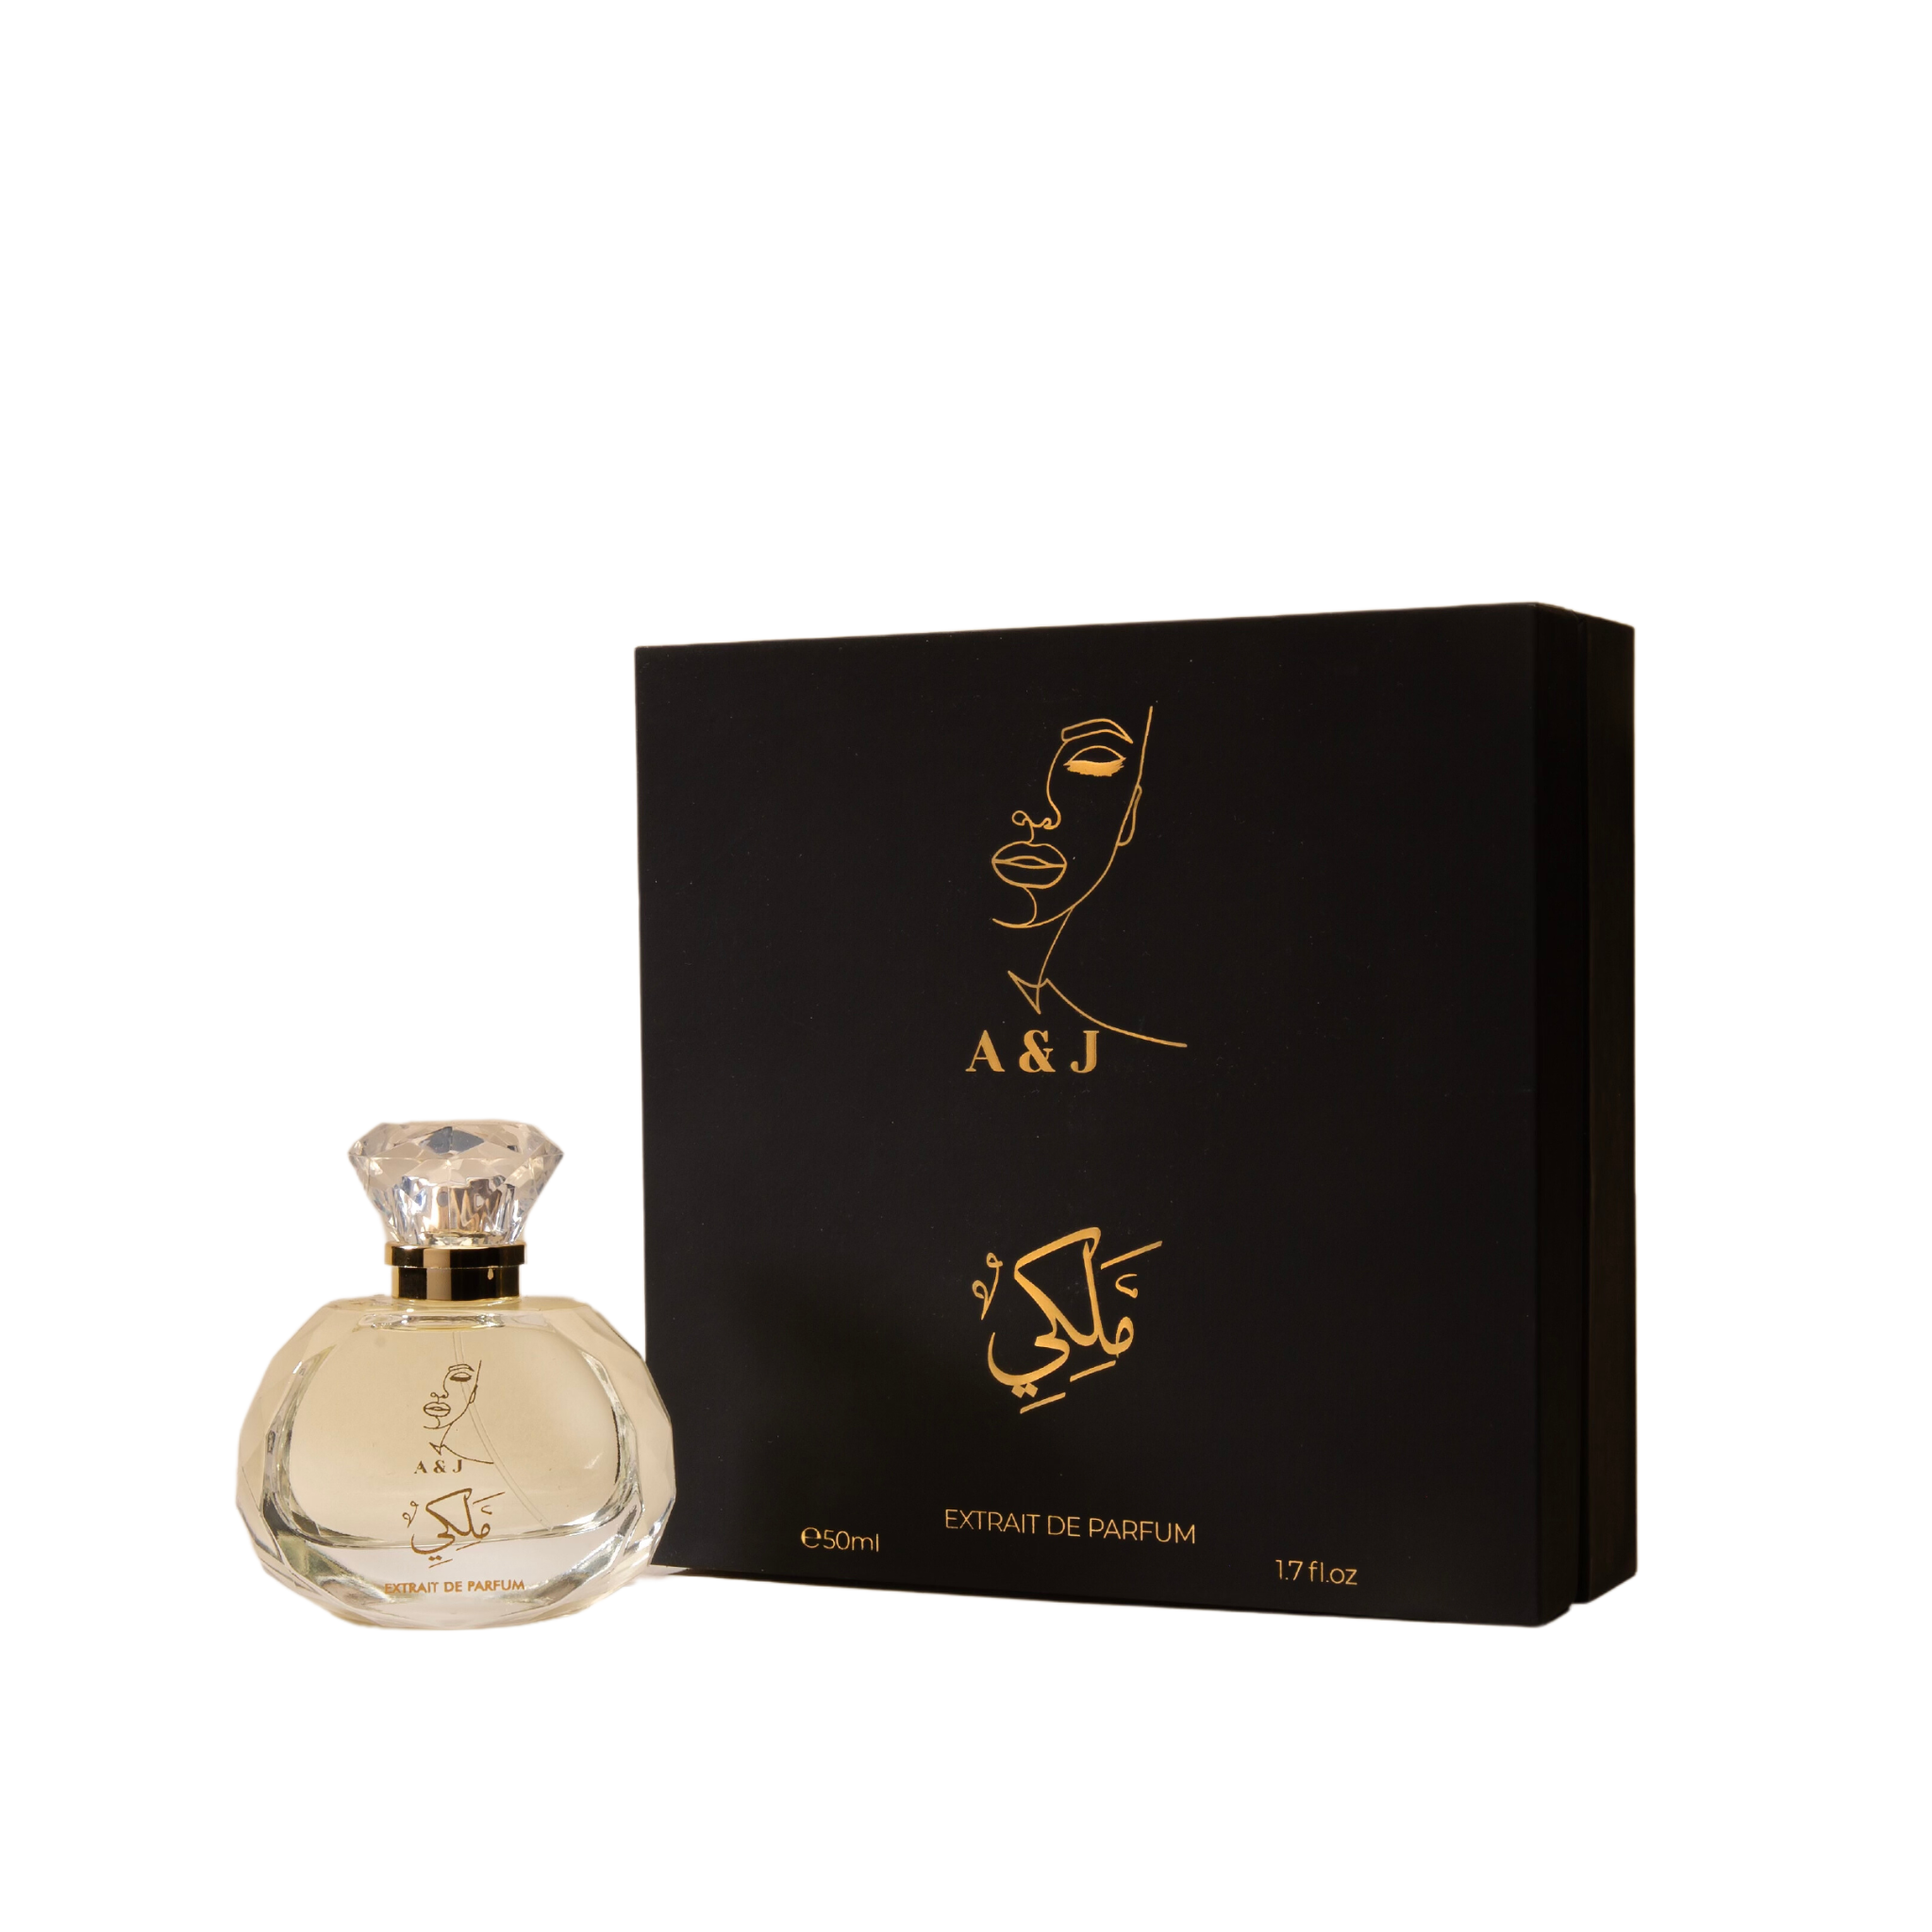 Royal Perfume by AJ